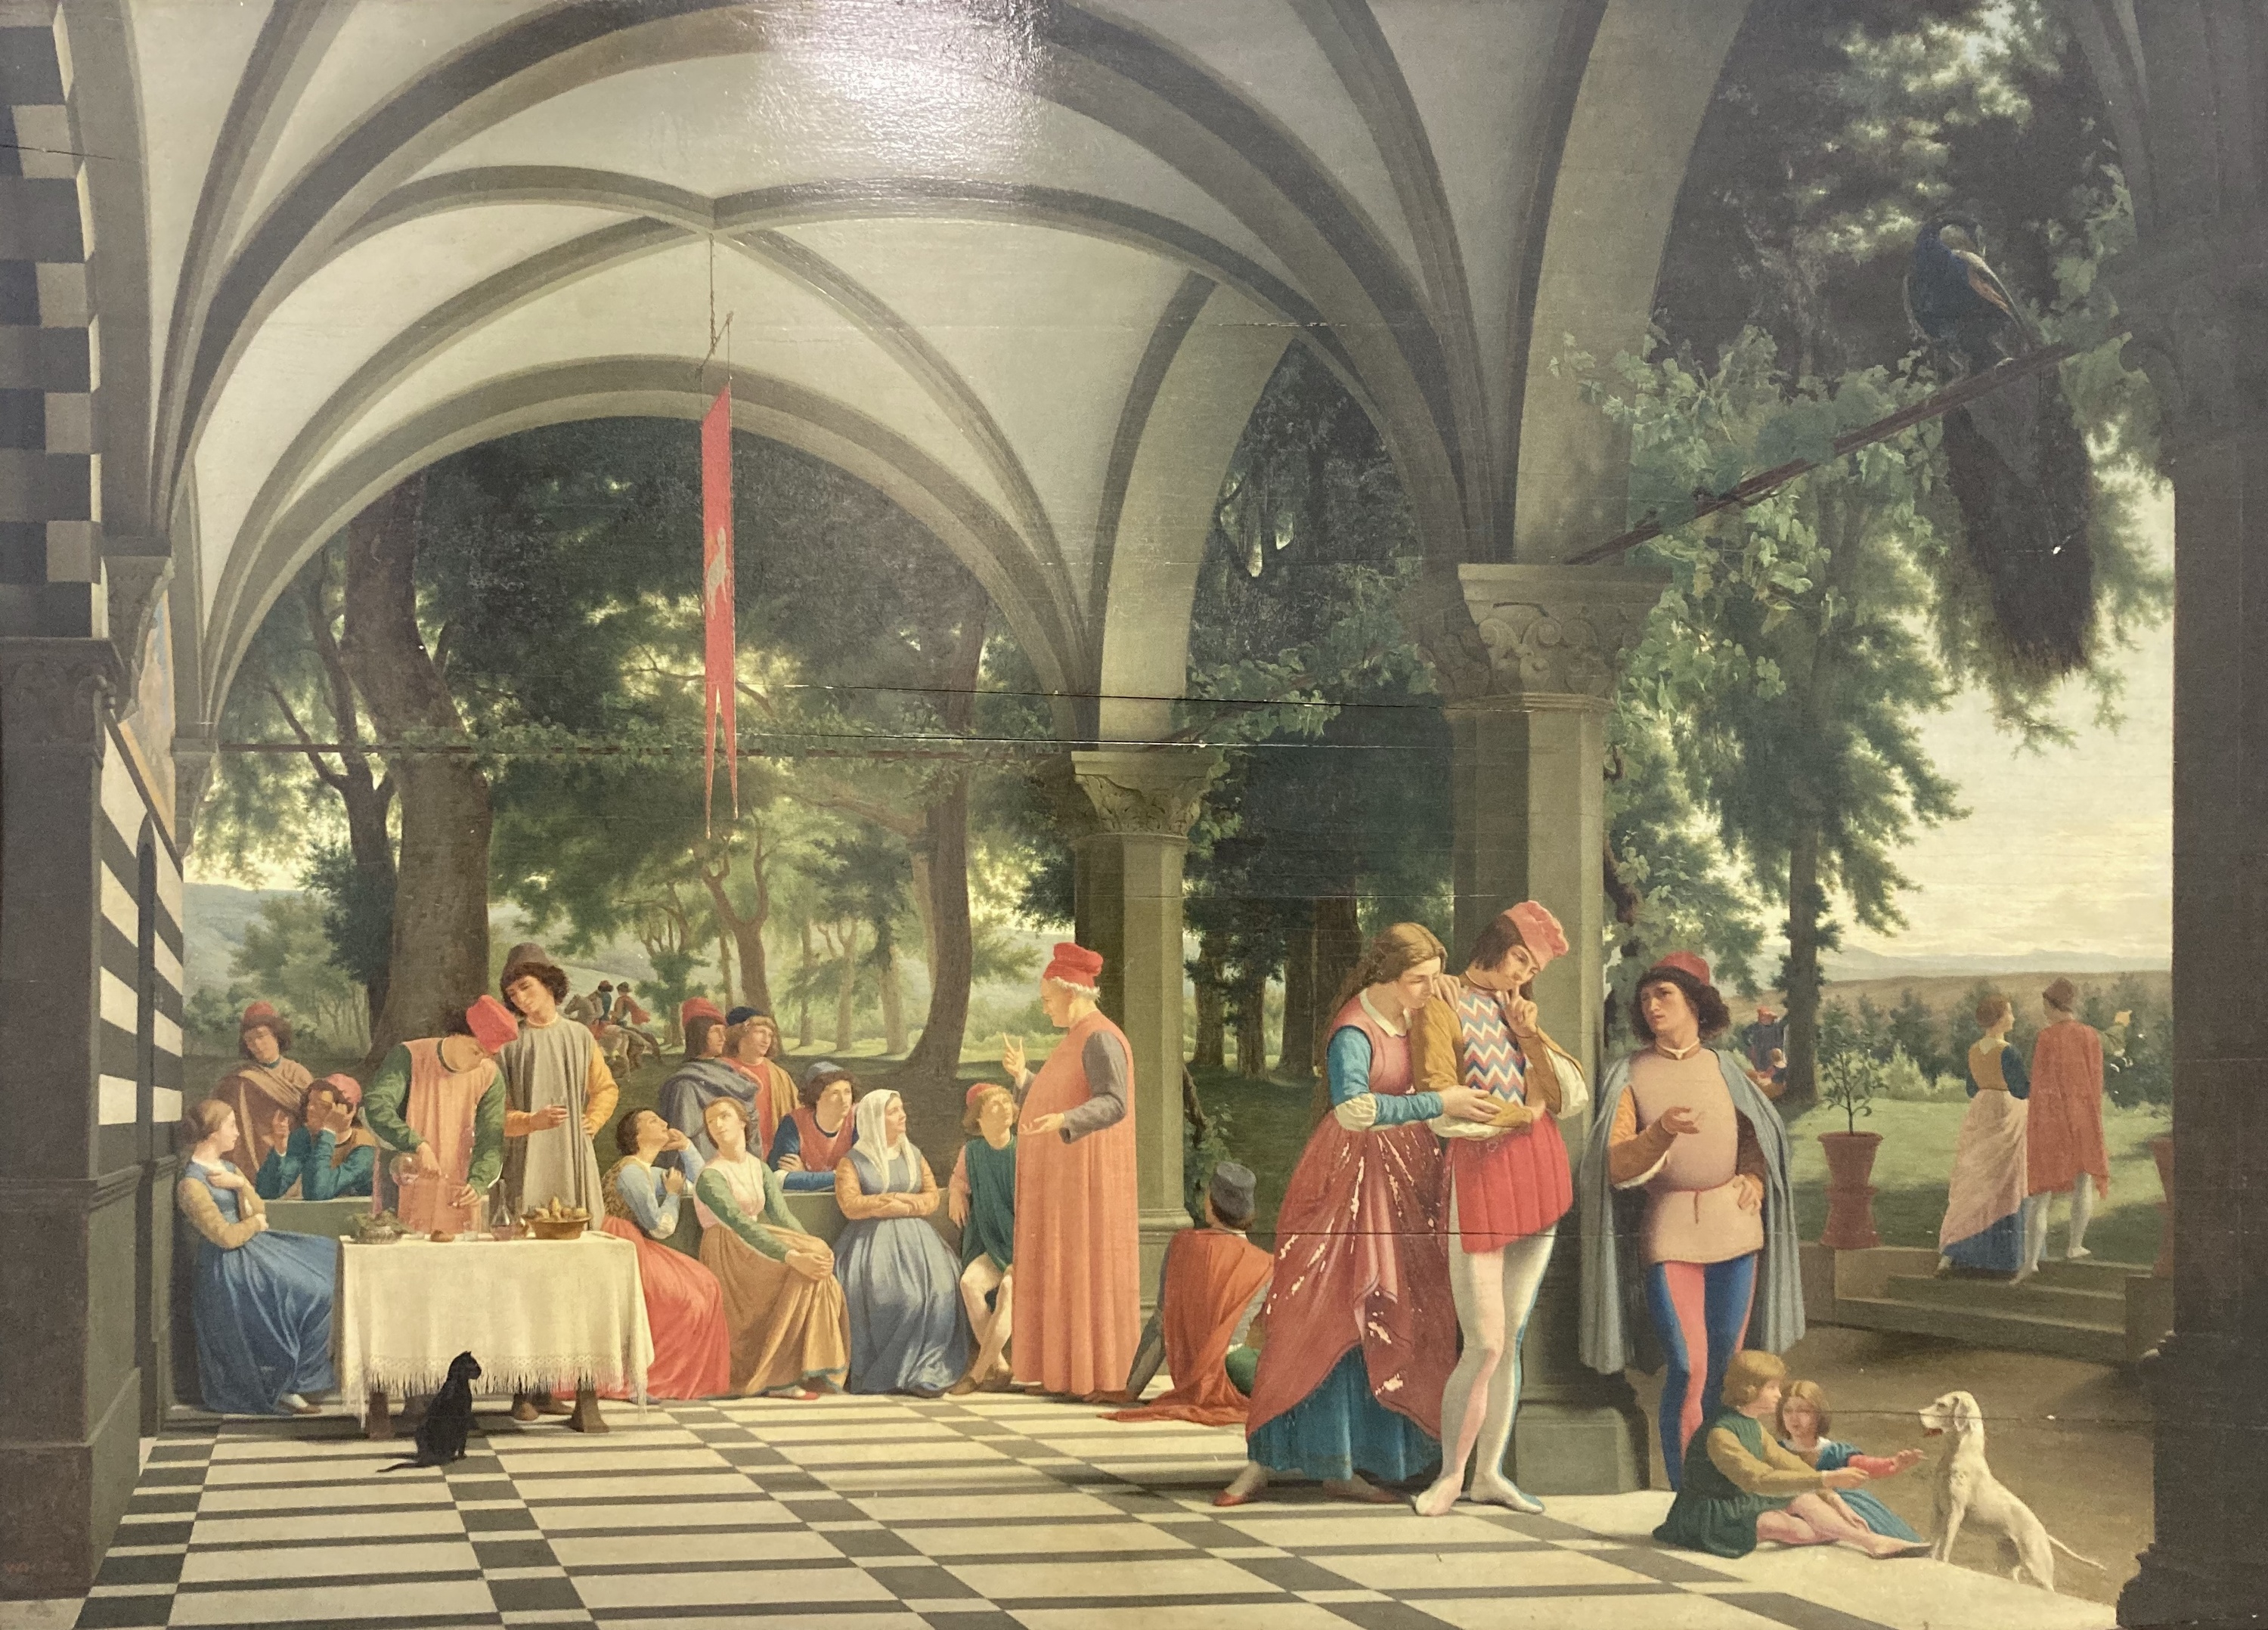 Haussoullier, Personnages sous un portique. Composition dans le style de la Renaissance italienne